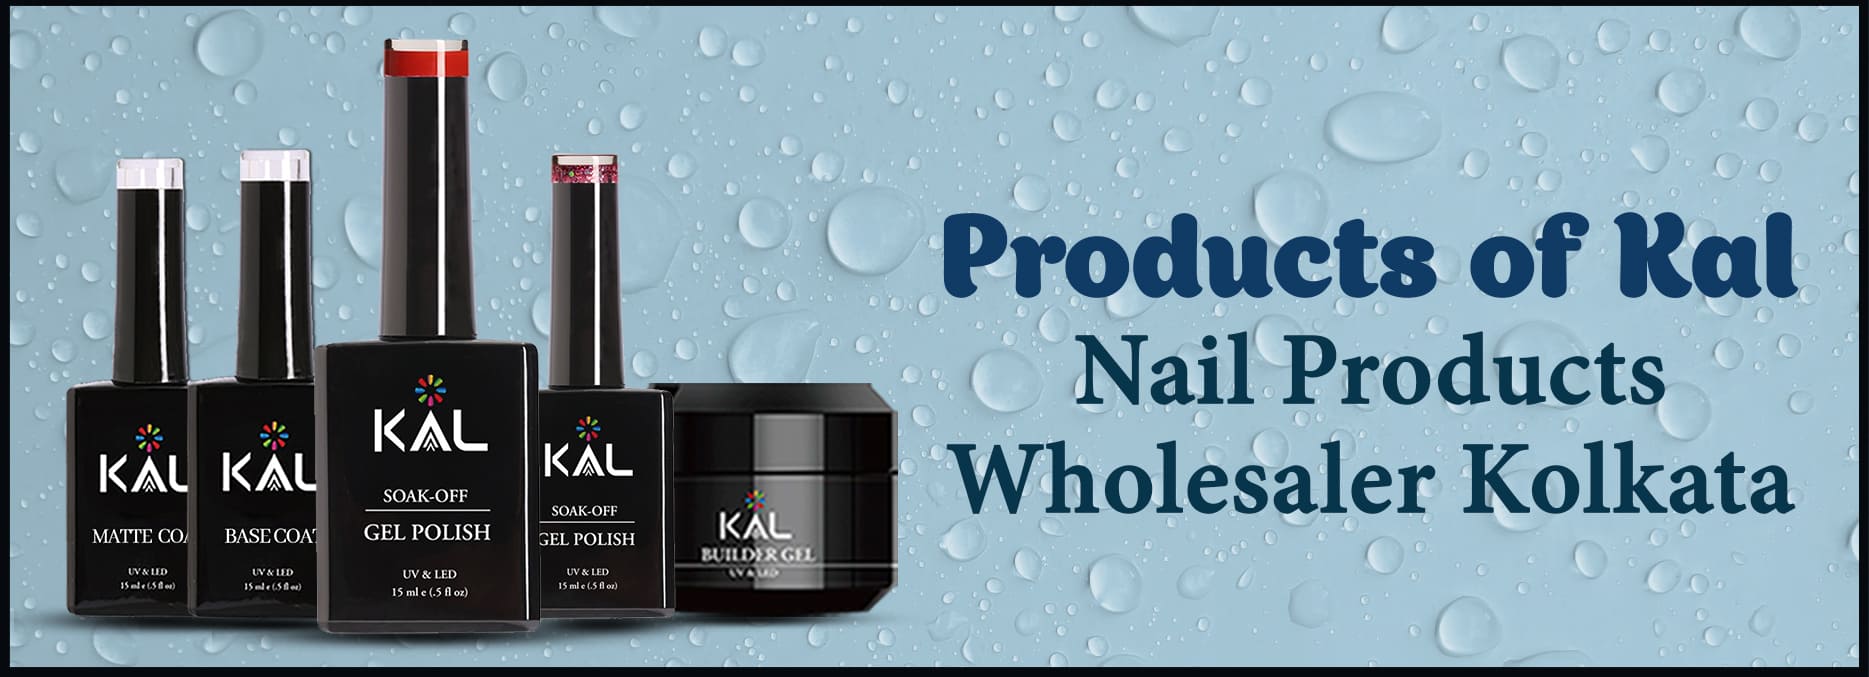 Kal - Gel and Gel Polishes Nail products wholesaler Kolkata